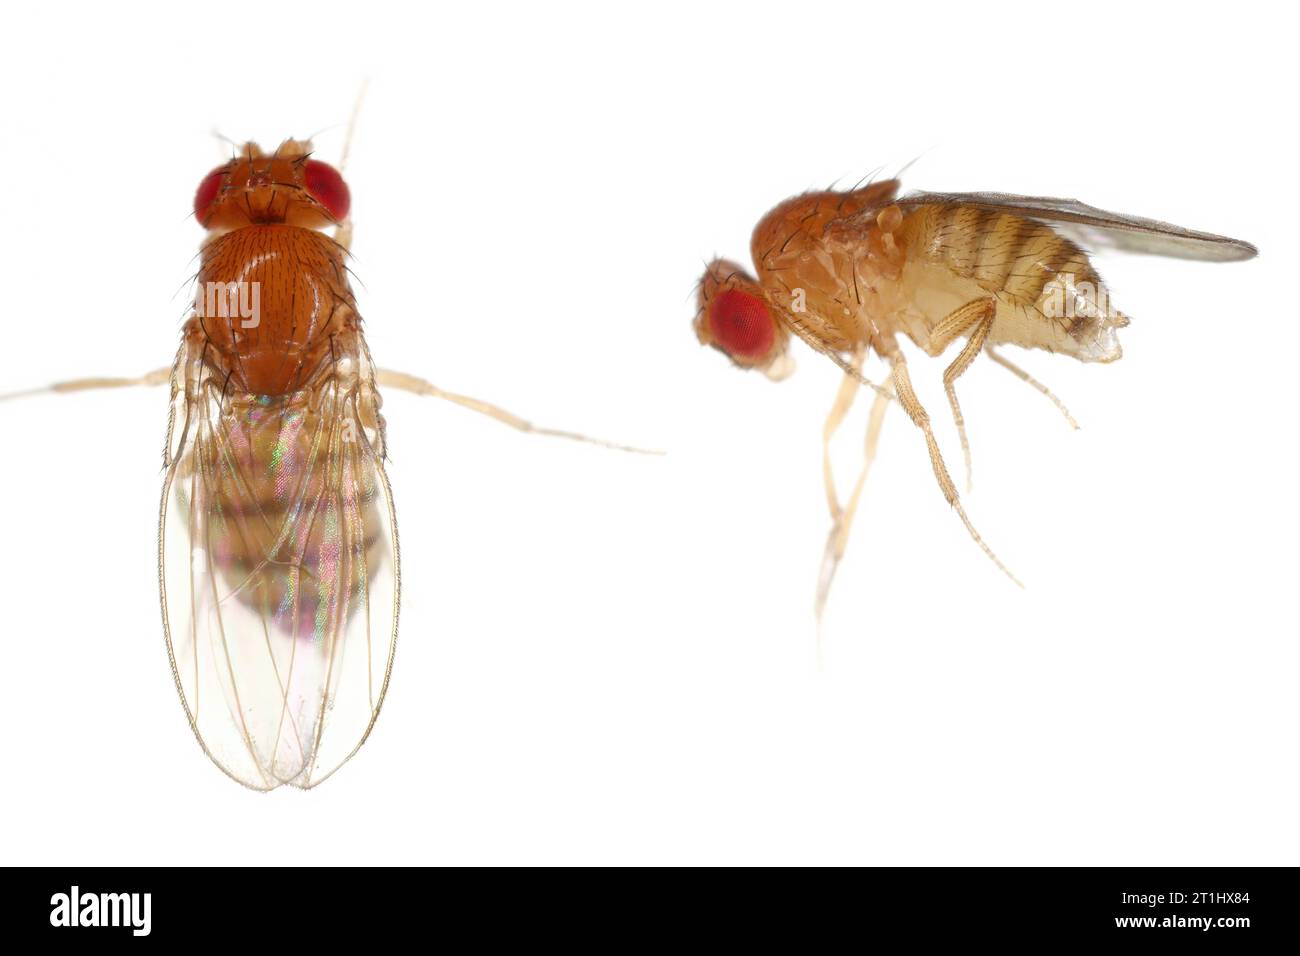 Mouche au vinaigre, mouche des fruits (Drosophila melanogaster). Insectes adultes dans divers plans. Isolé sur un fond clair. Banque D'Images